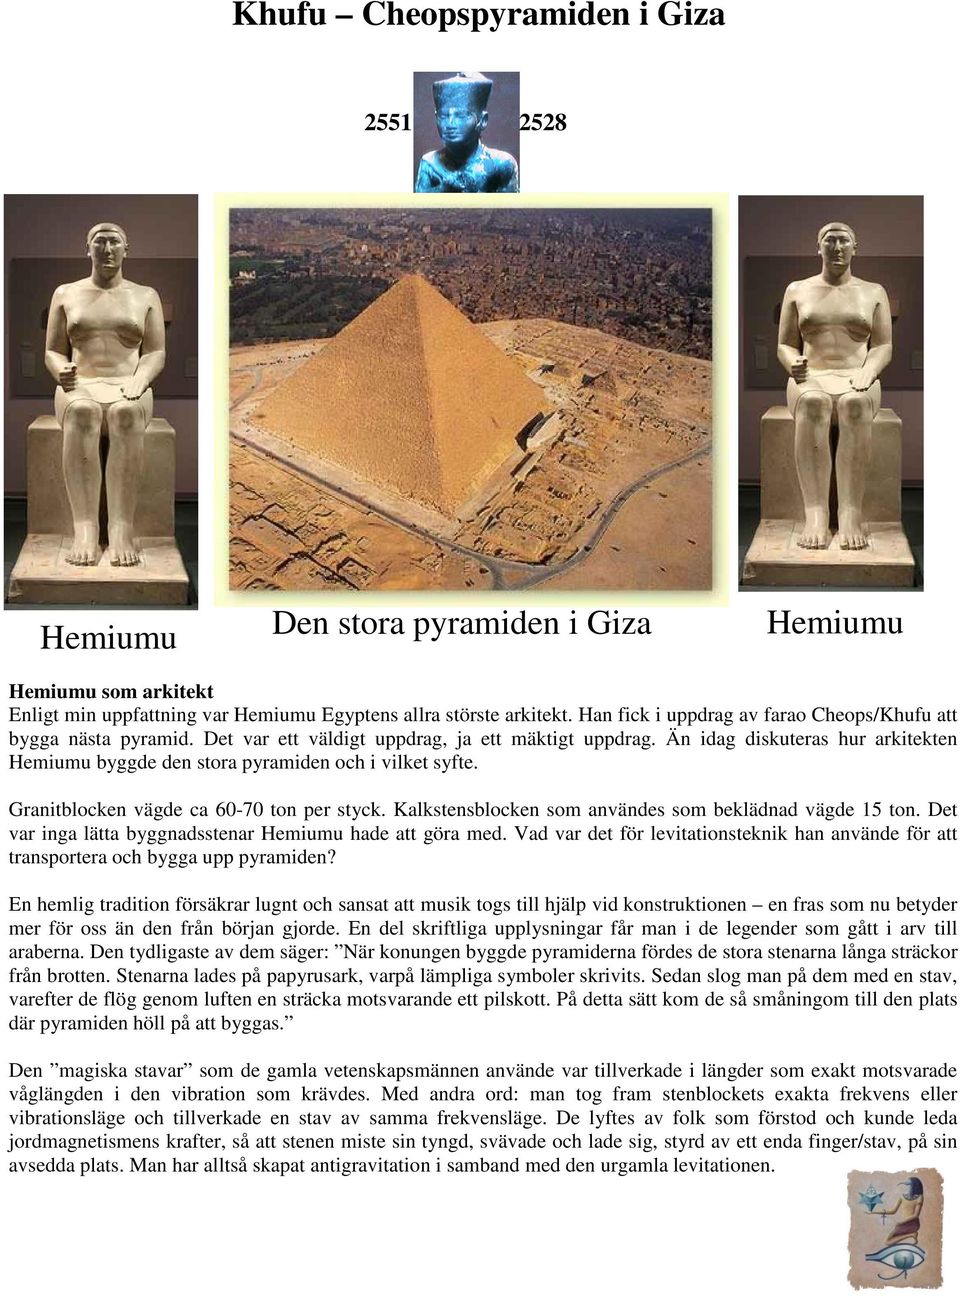 Än idag diskuteras hur arkitekten Hemiumu byggde den stora pyramiden och i vilket syfte. Granitblocken vägde ca 60-70 ton per styck. Kalkstensblocken som användes som beklädnad vägde 15 ton.